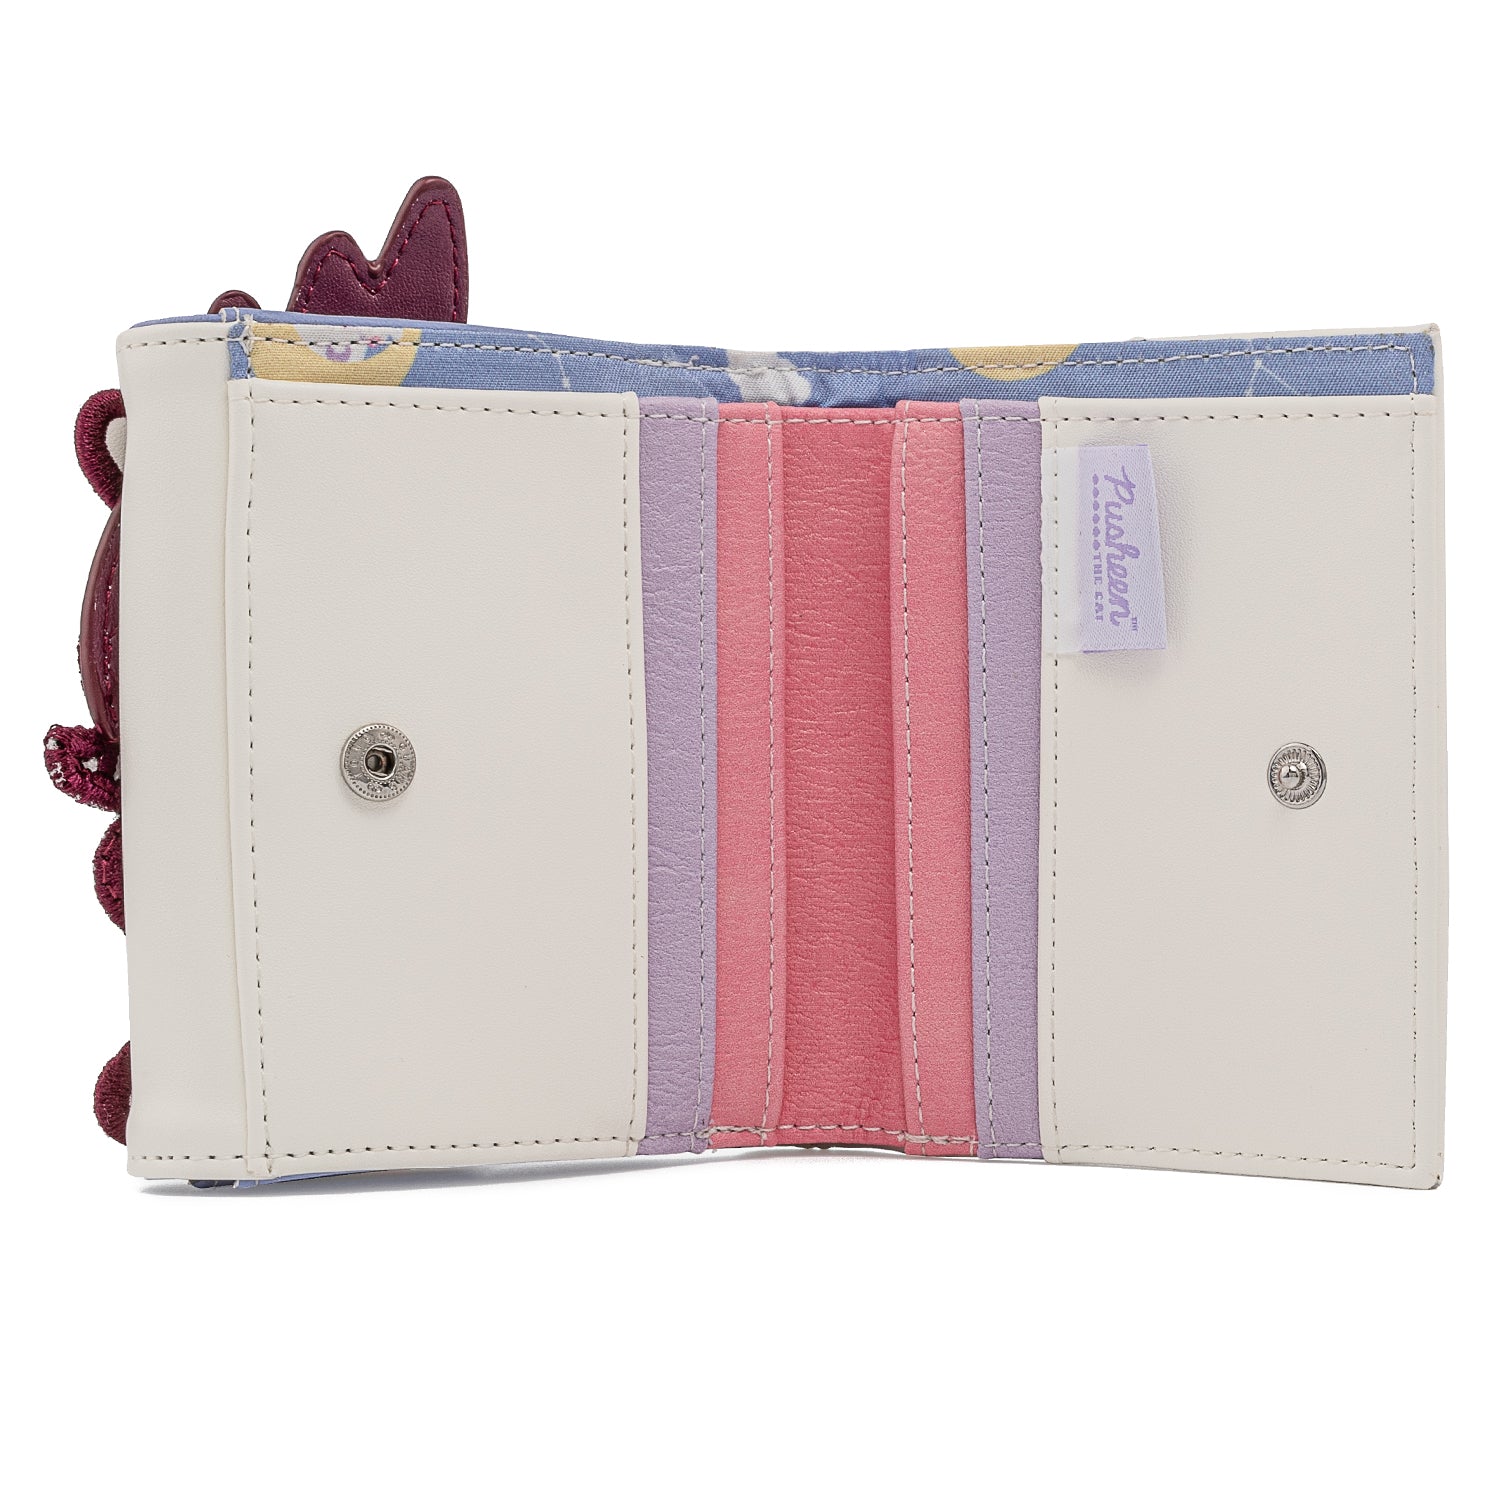 Loungefly Pusheen Unicorn Plush Flap Zip Wallet